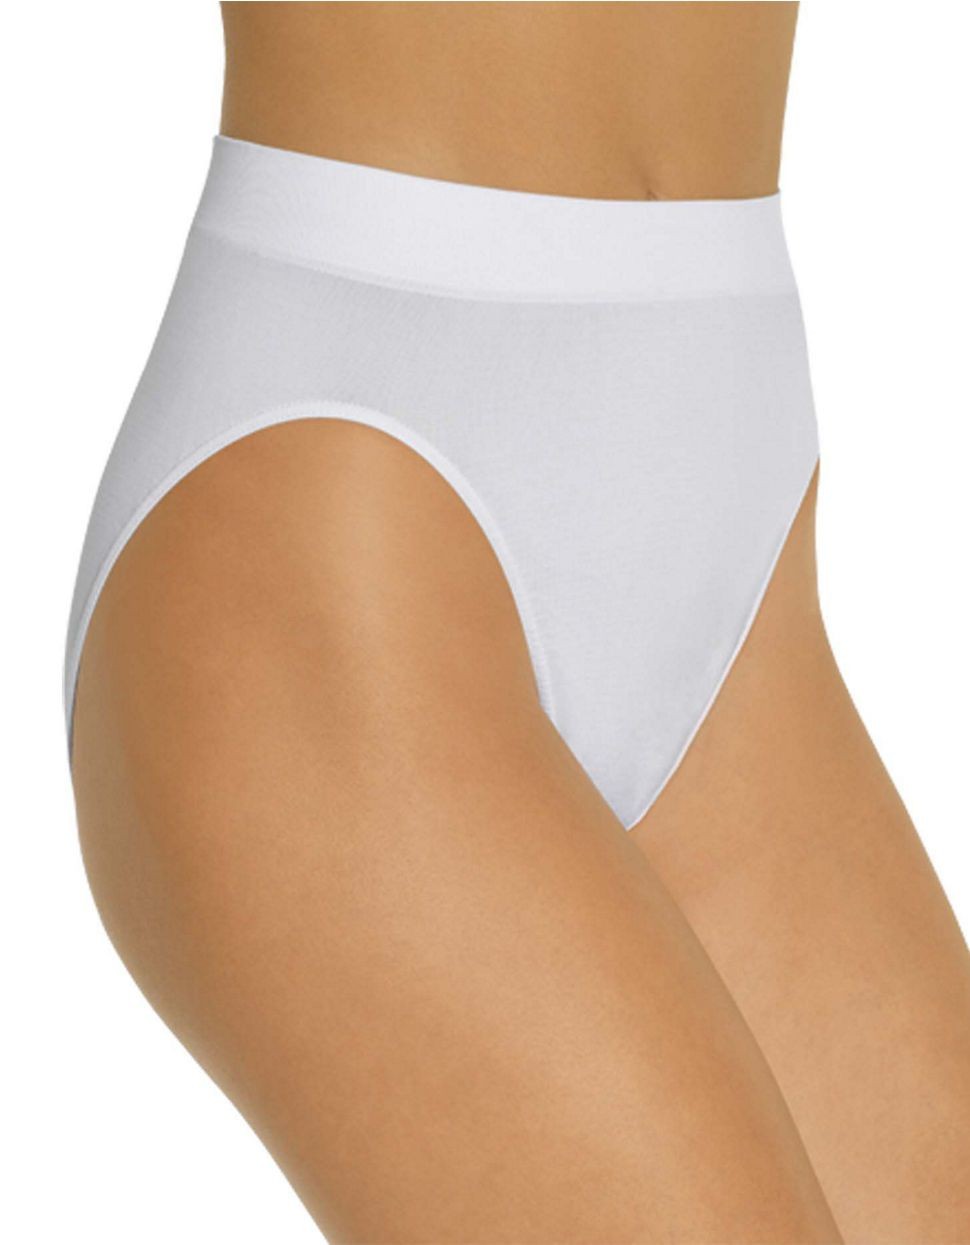 BALI High-cut Panties – 3 pack – B303JH3 - Basics by Mail